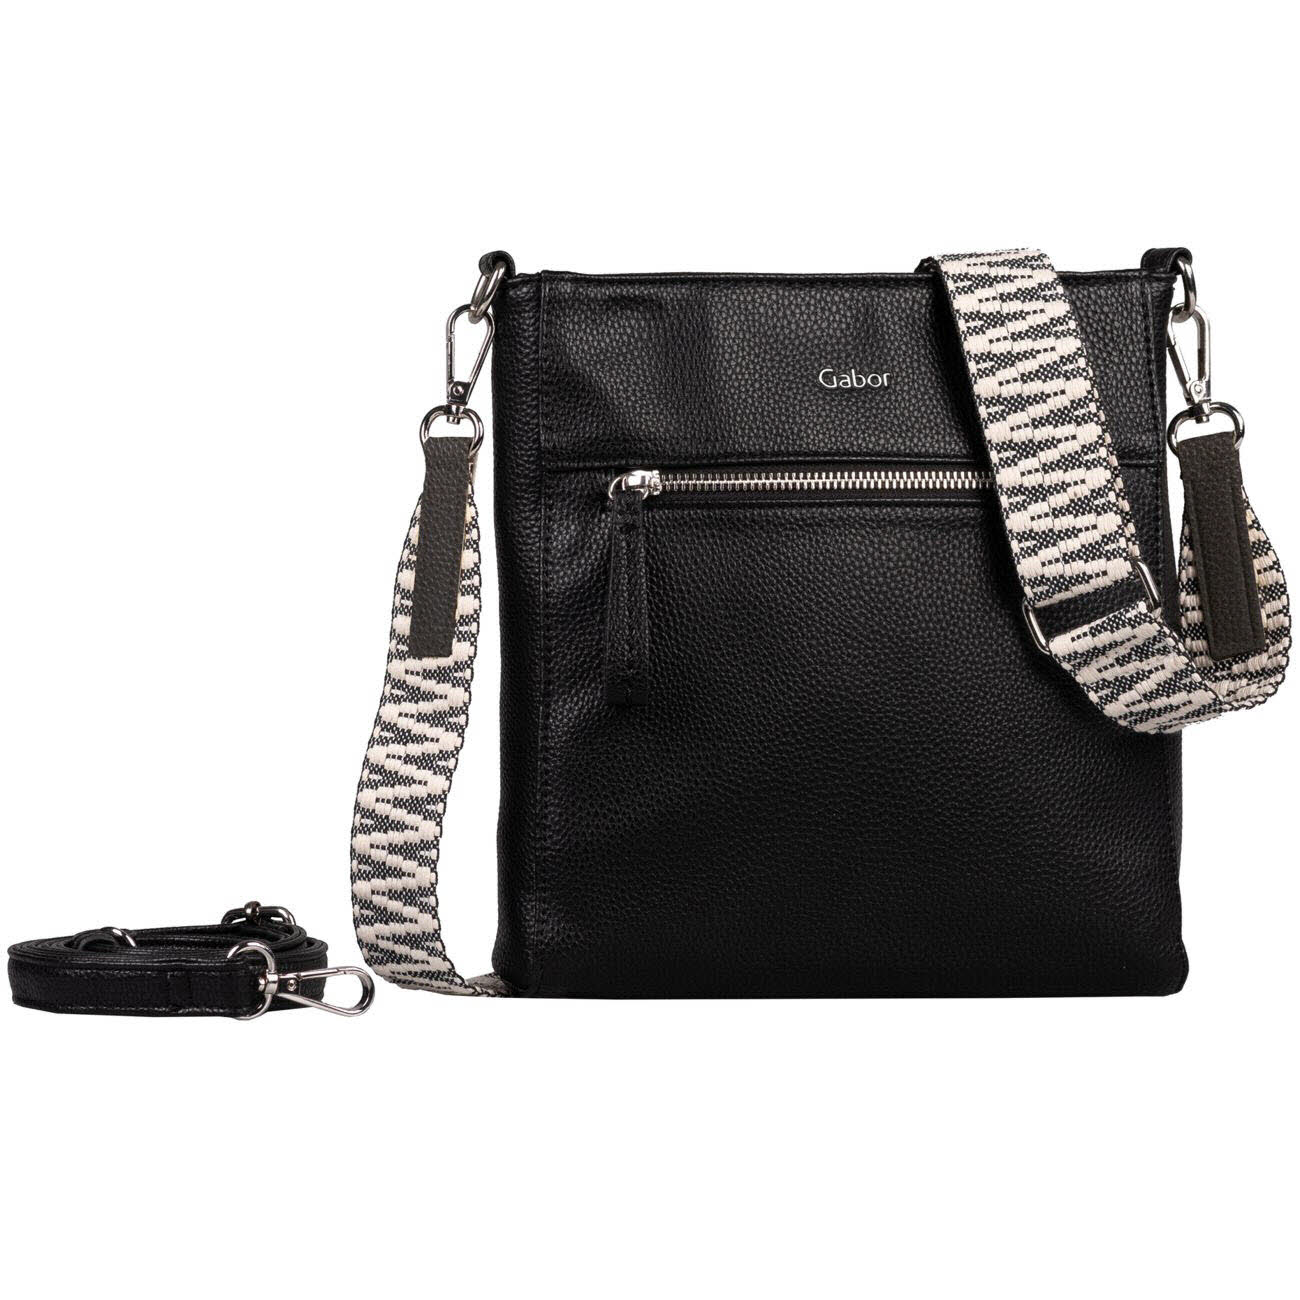 Damen Umhängetasche Silena Cross Bag S von Gabor Bags auch in Schwarz erhältlich